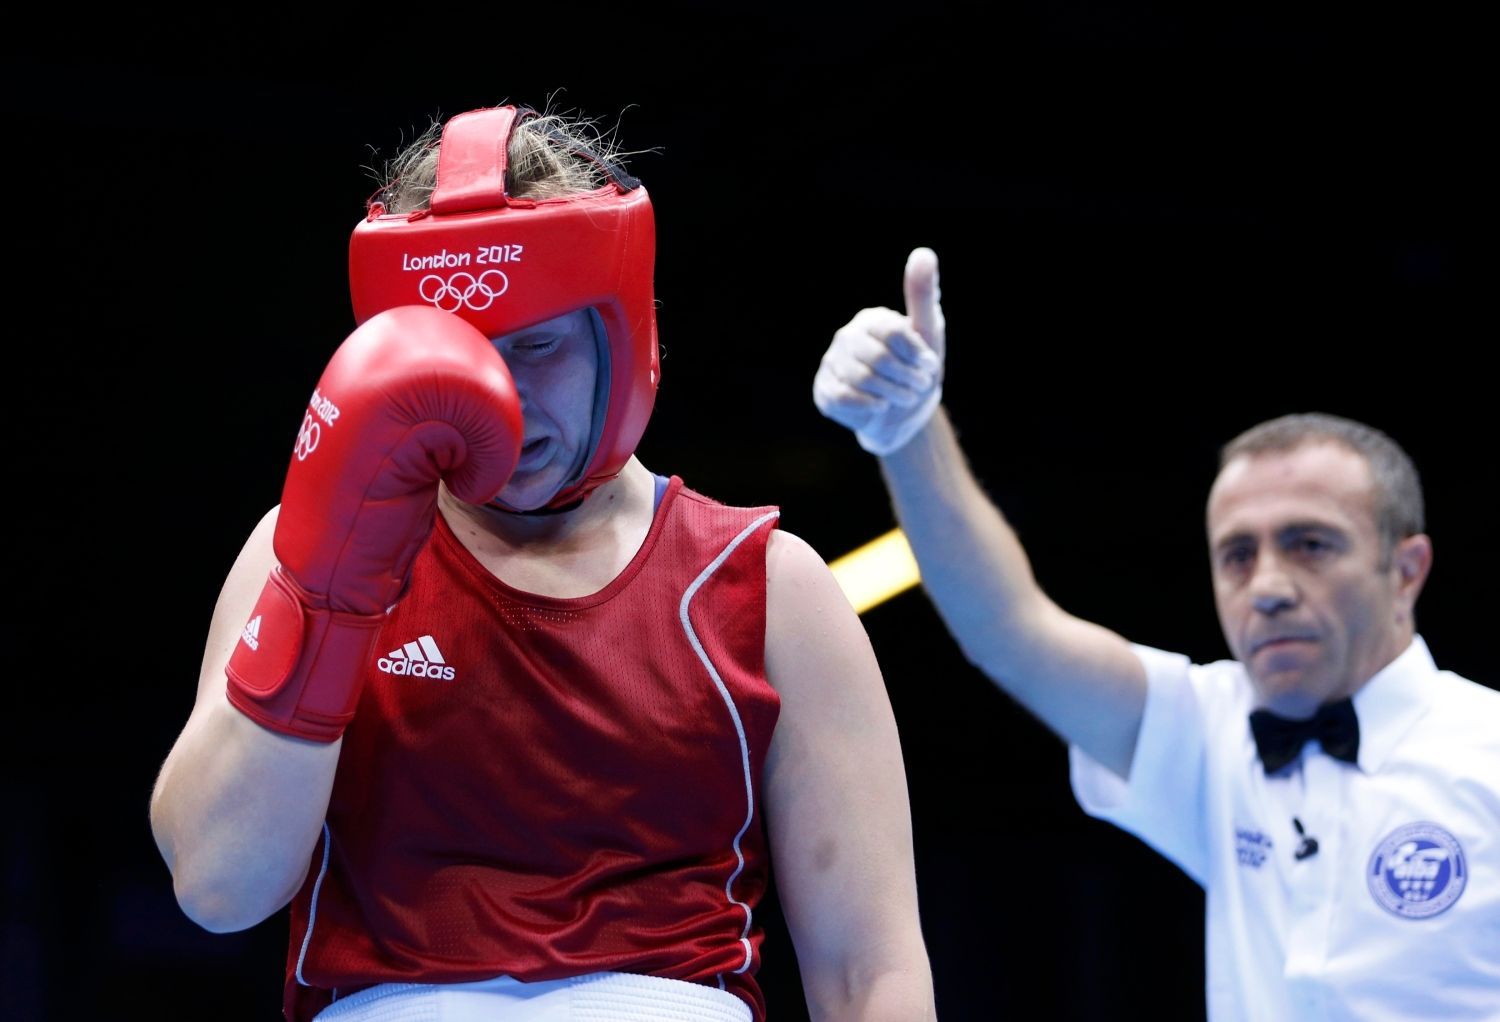 Kazašská boxerka Marina Volnovová prohrála s Američankou Claressou Shieldsovou v kategorii do 75 kg na OH 2012 v Londýně.